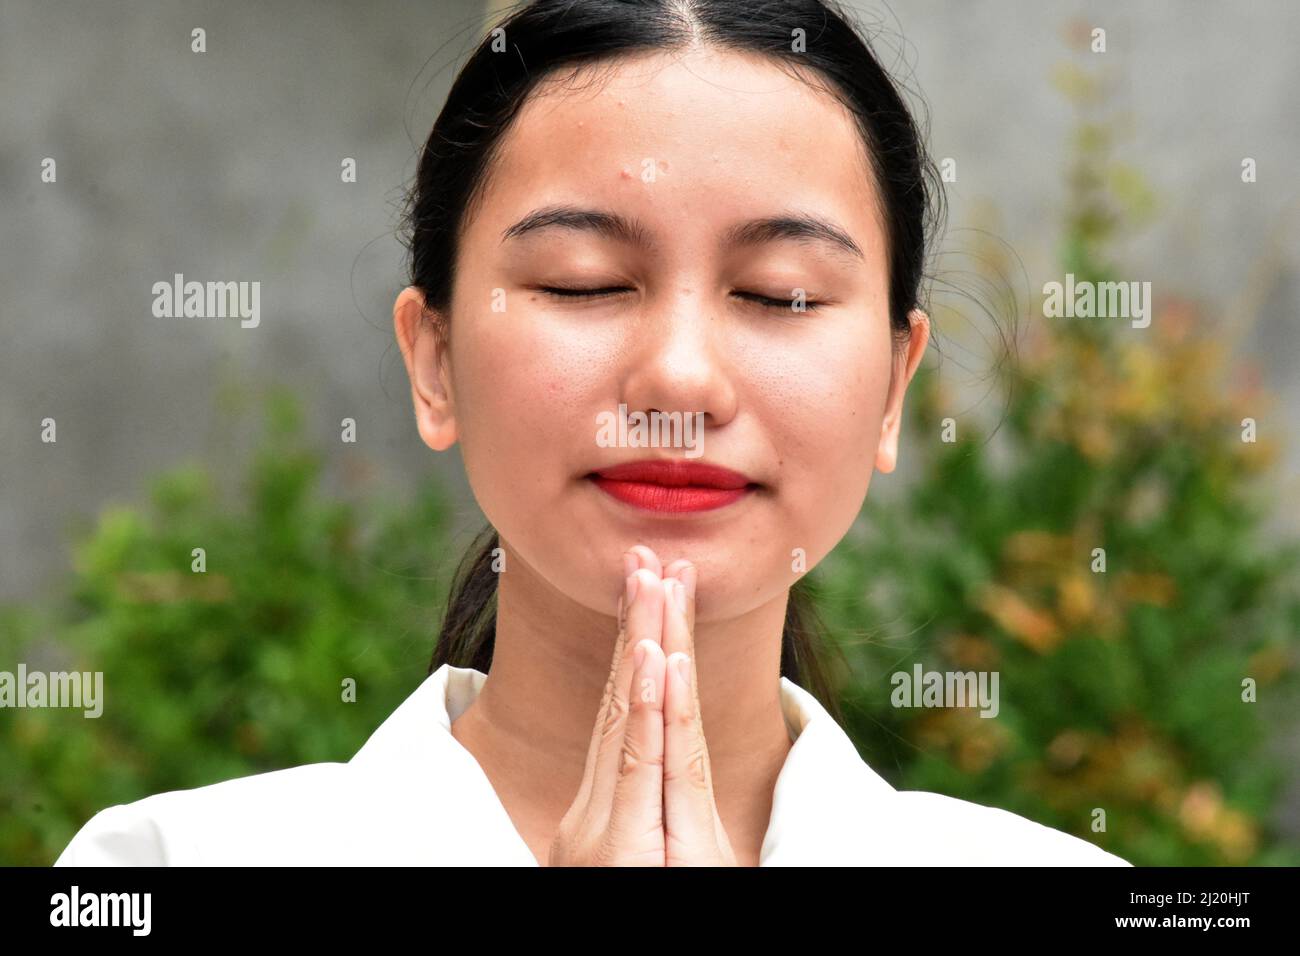 A Religious Asian Woman Praying Stock Photo